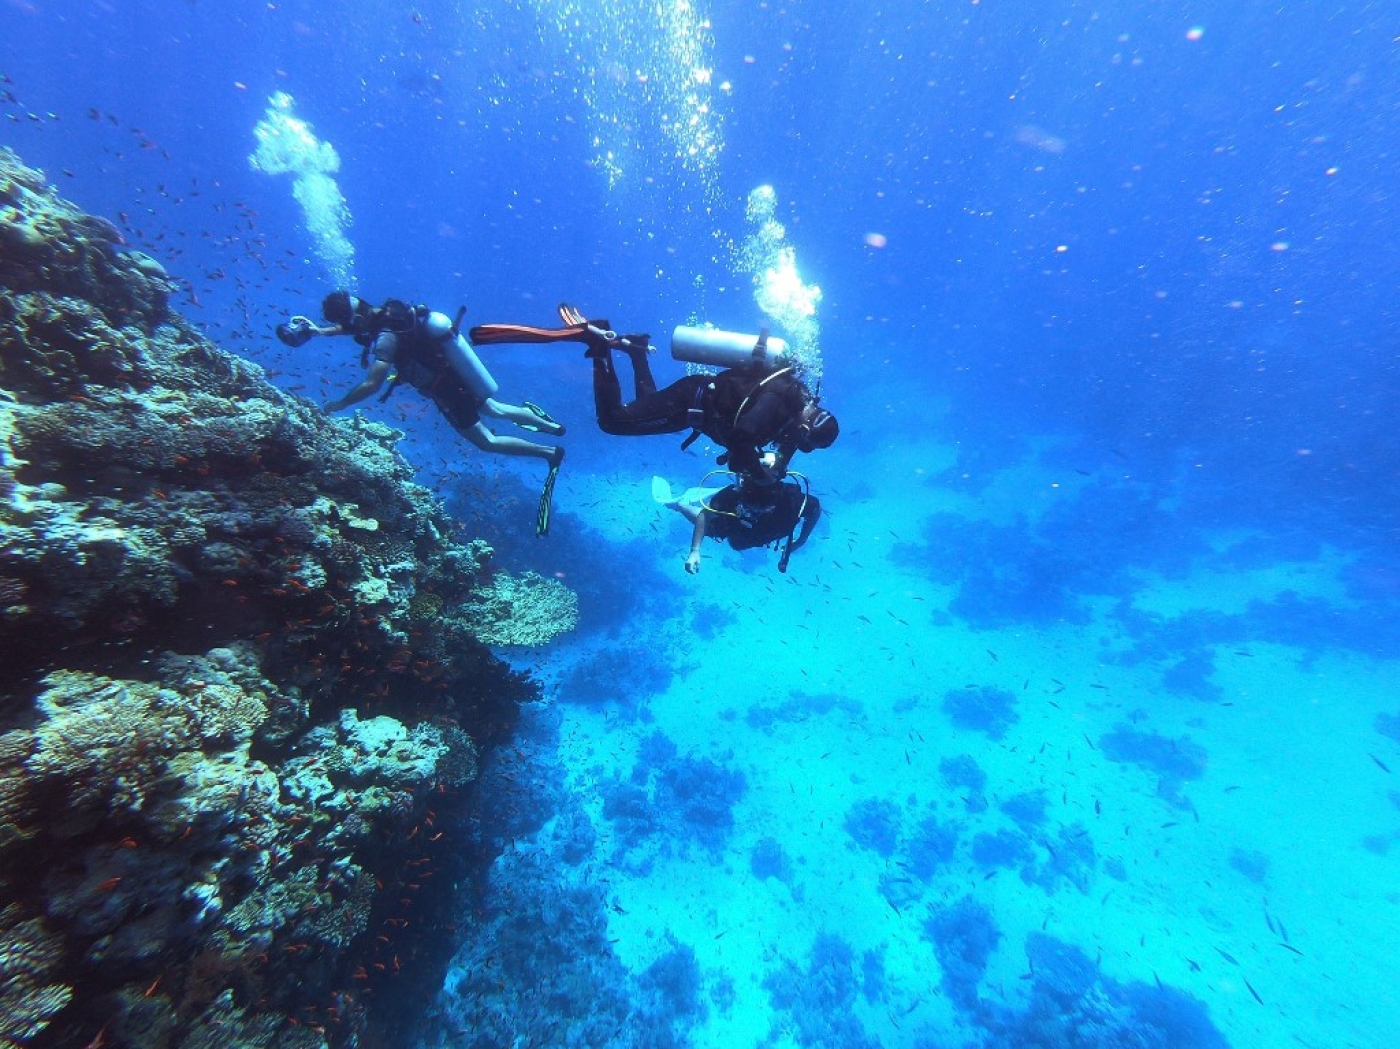 Sans corail, plus du quart de la vie marine est menacée (AFP/Khaled Desouki)